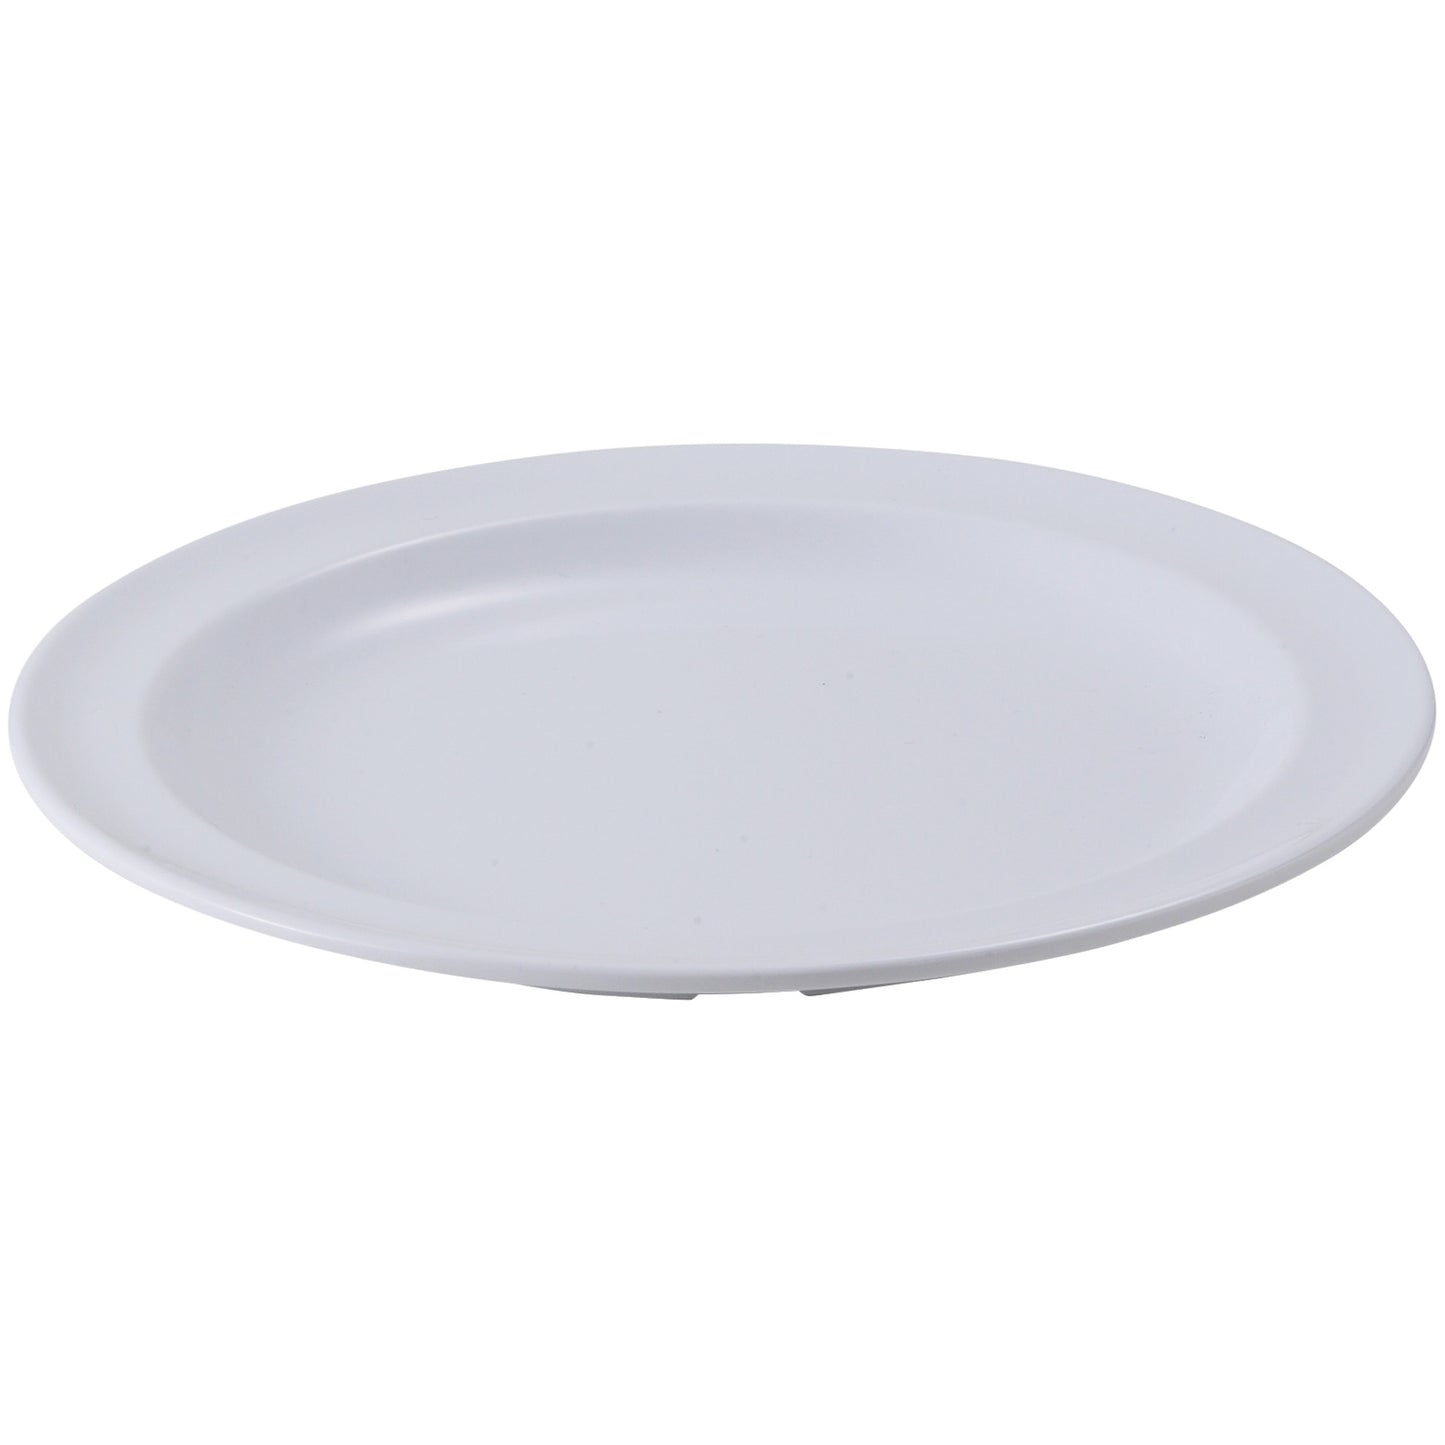 MMPR-8W - Melamine 8" Round Plates - White